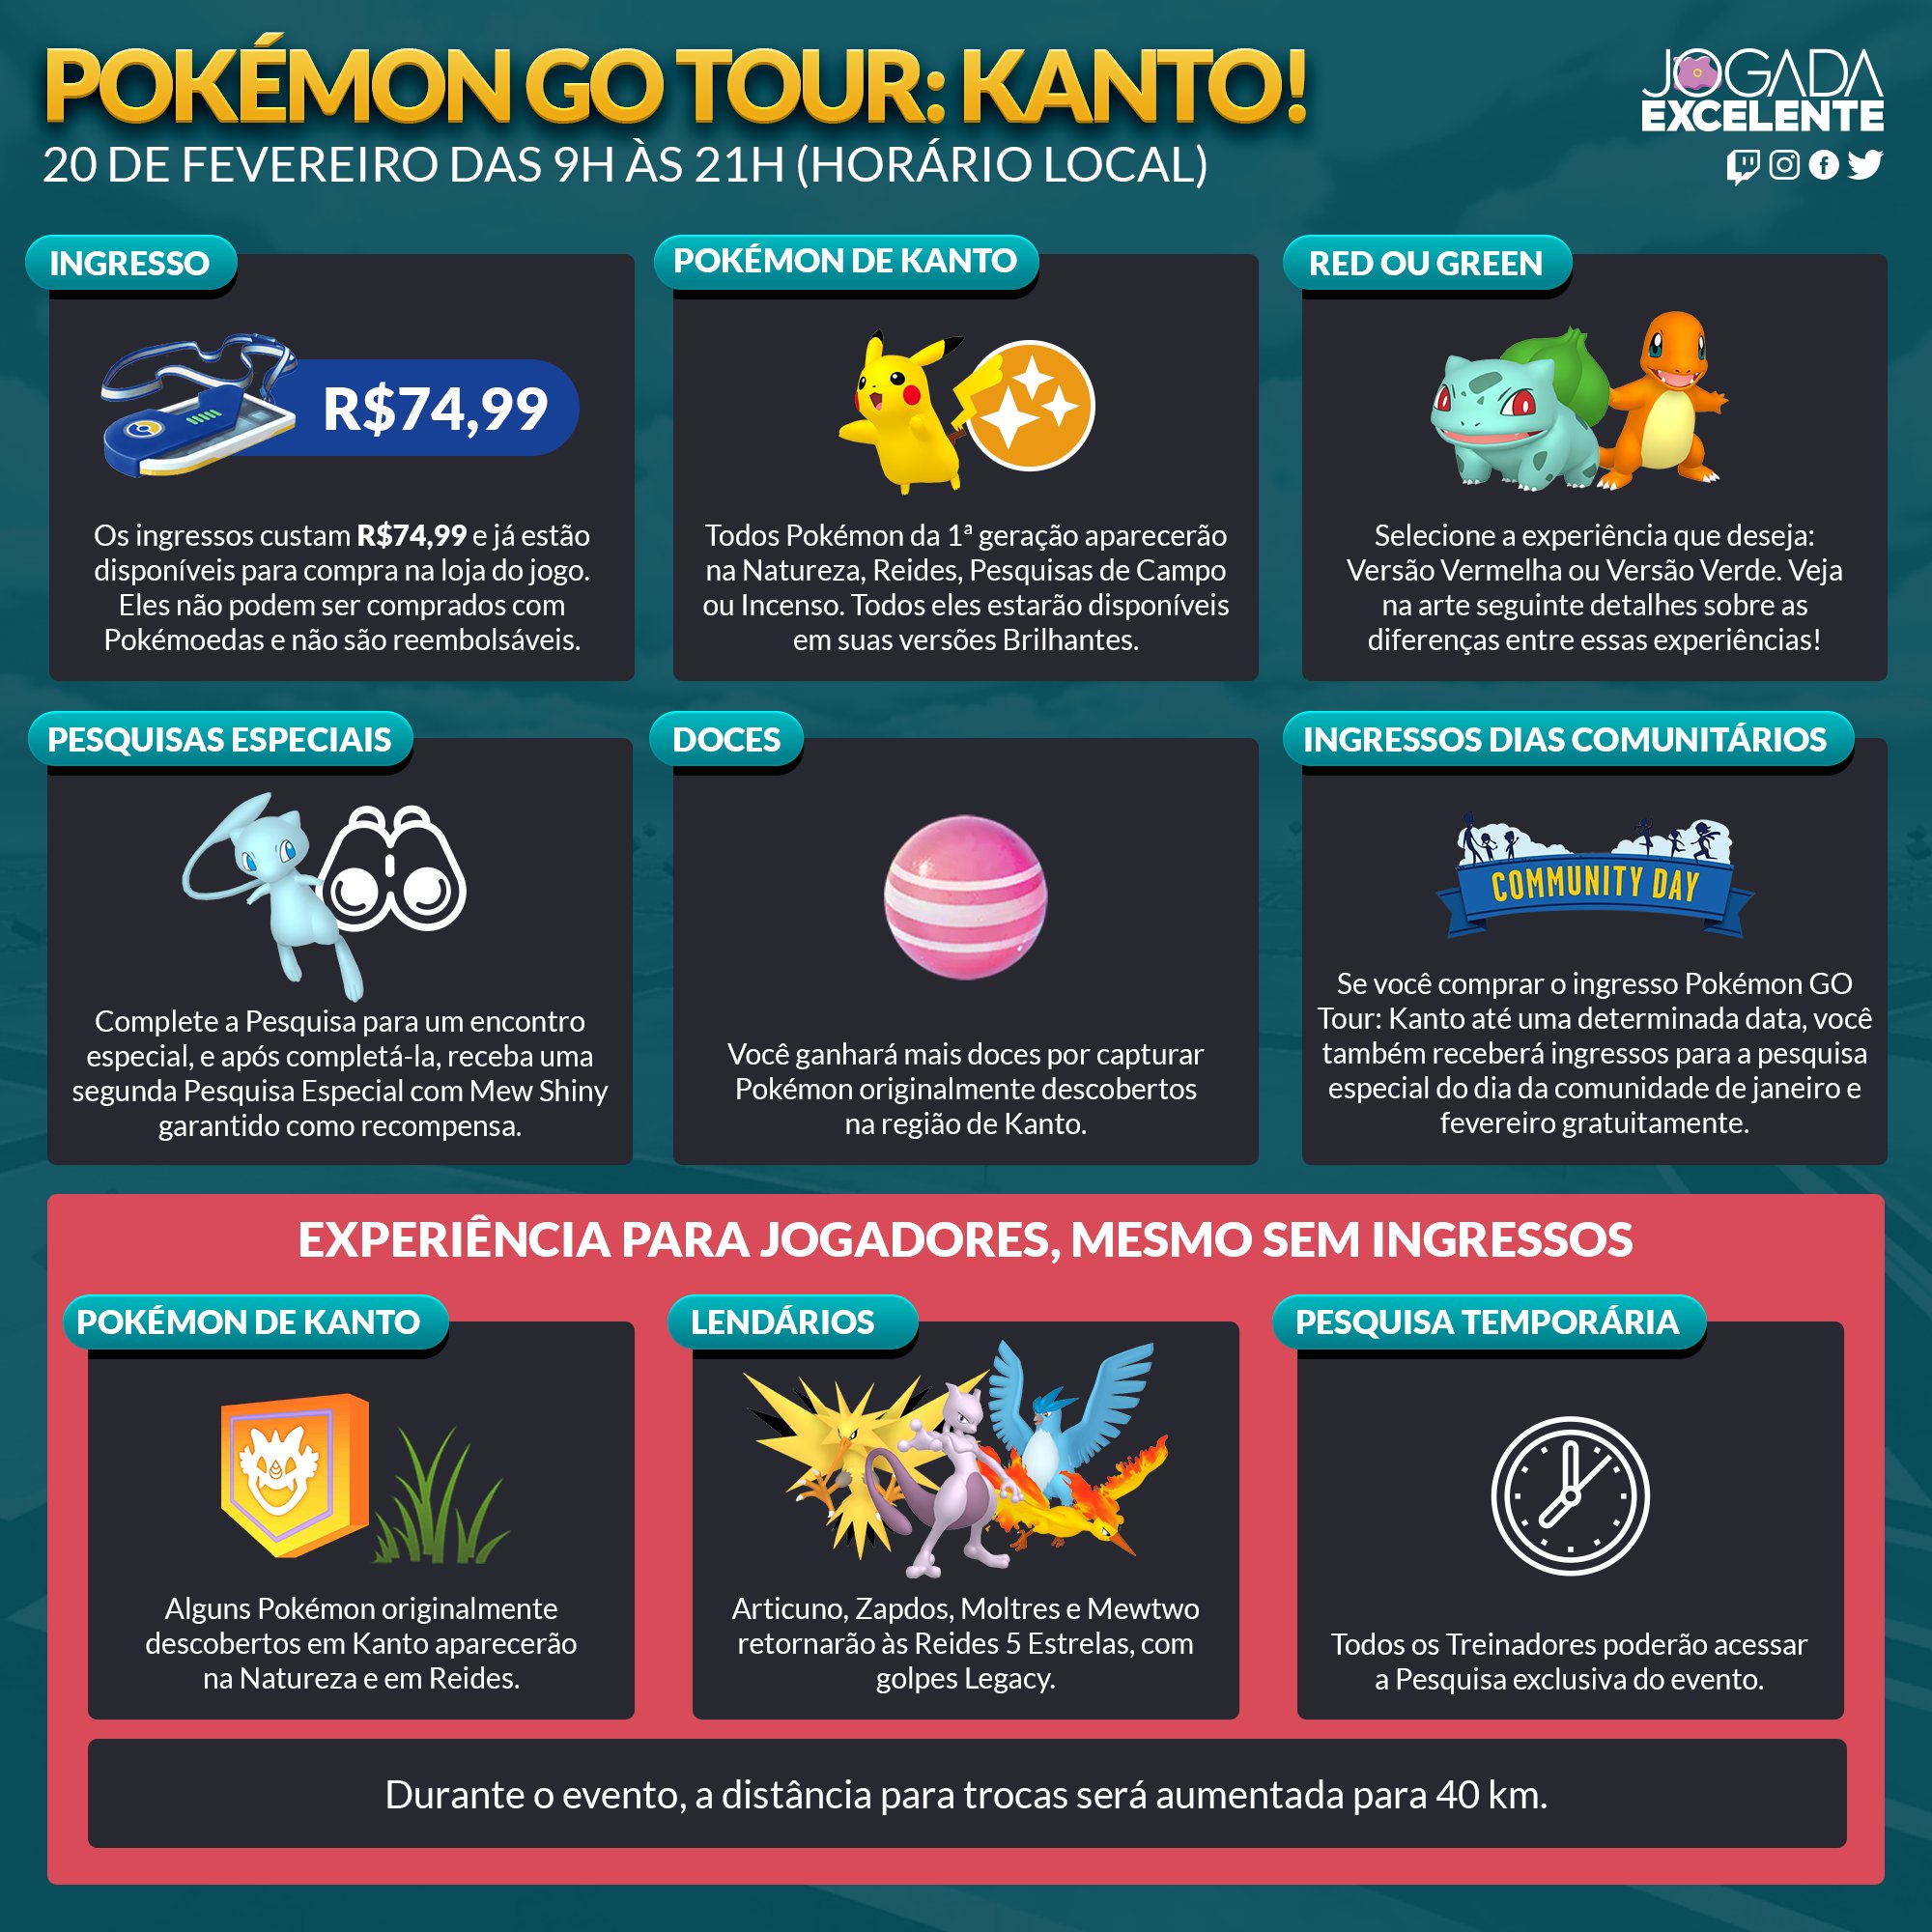 Jogada Excelente on X: Pokémon GO: Confira detalhes do evento